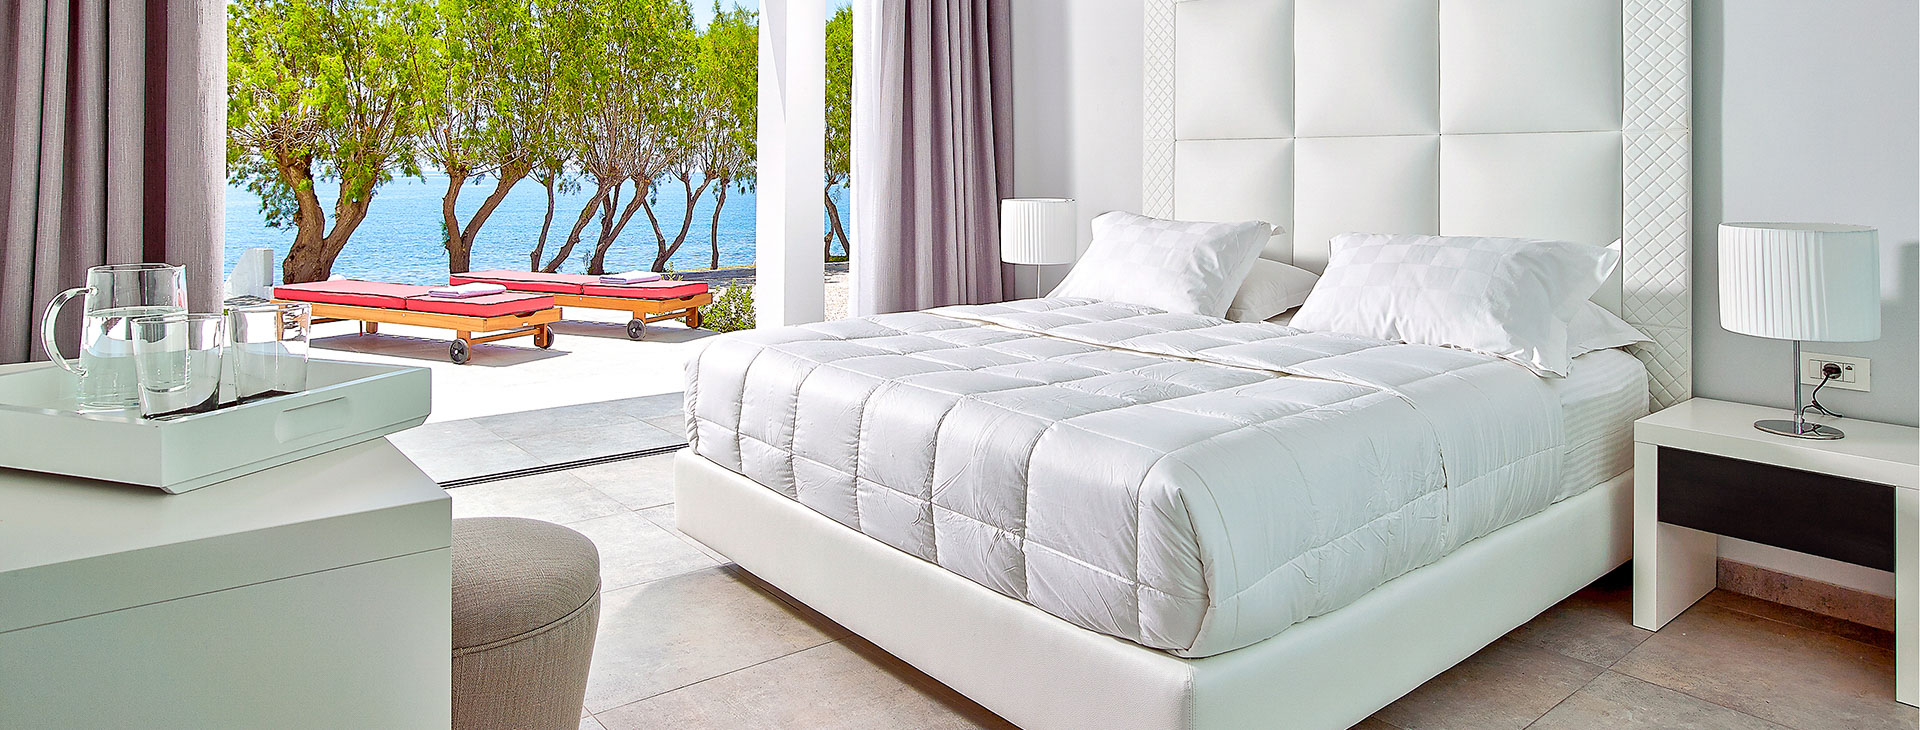 Dimitra Beach hotel & Suites Obrázek1